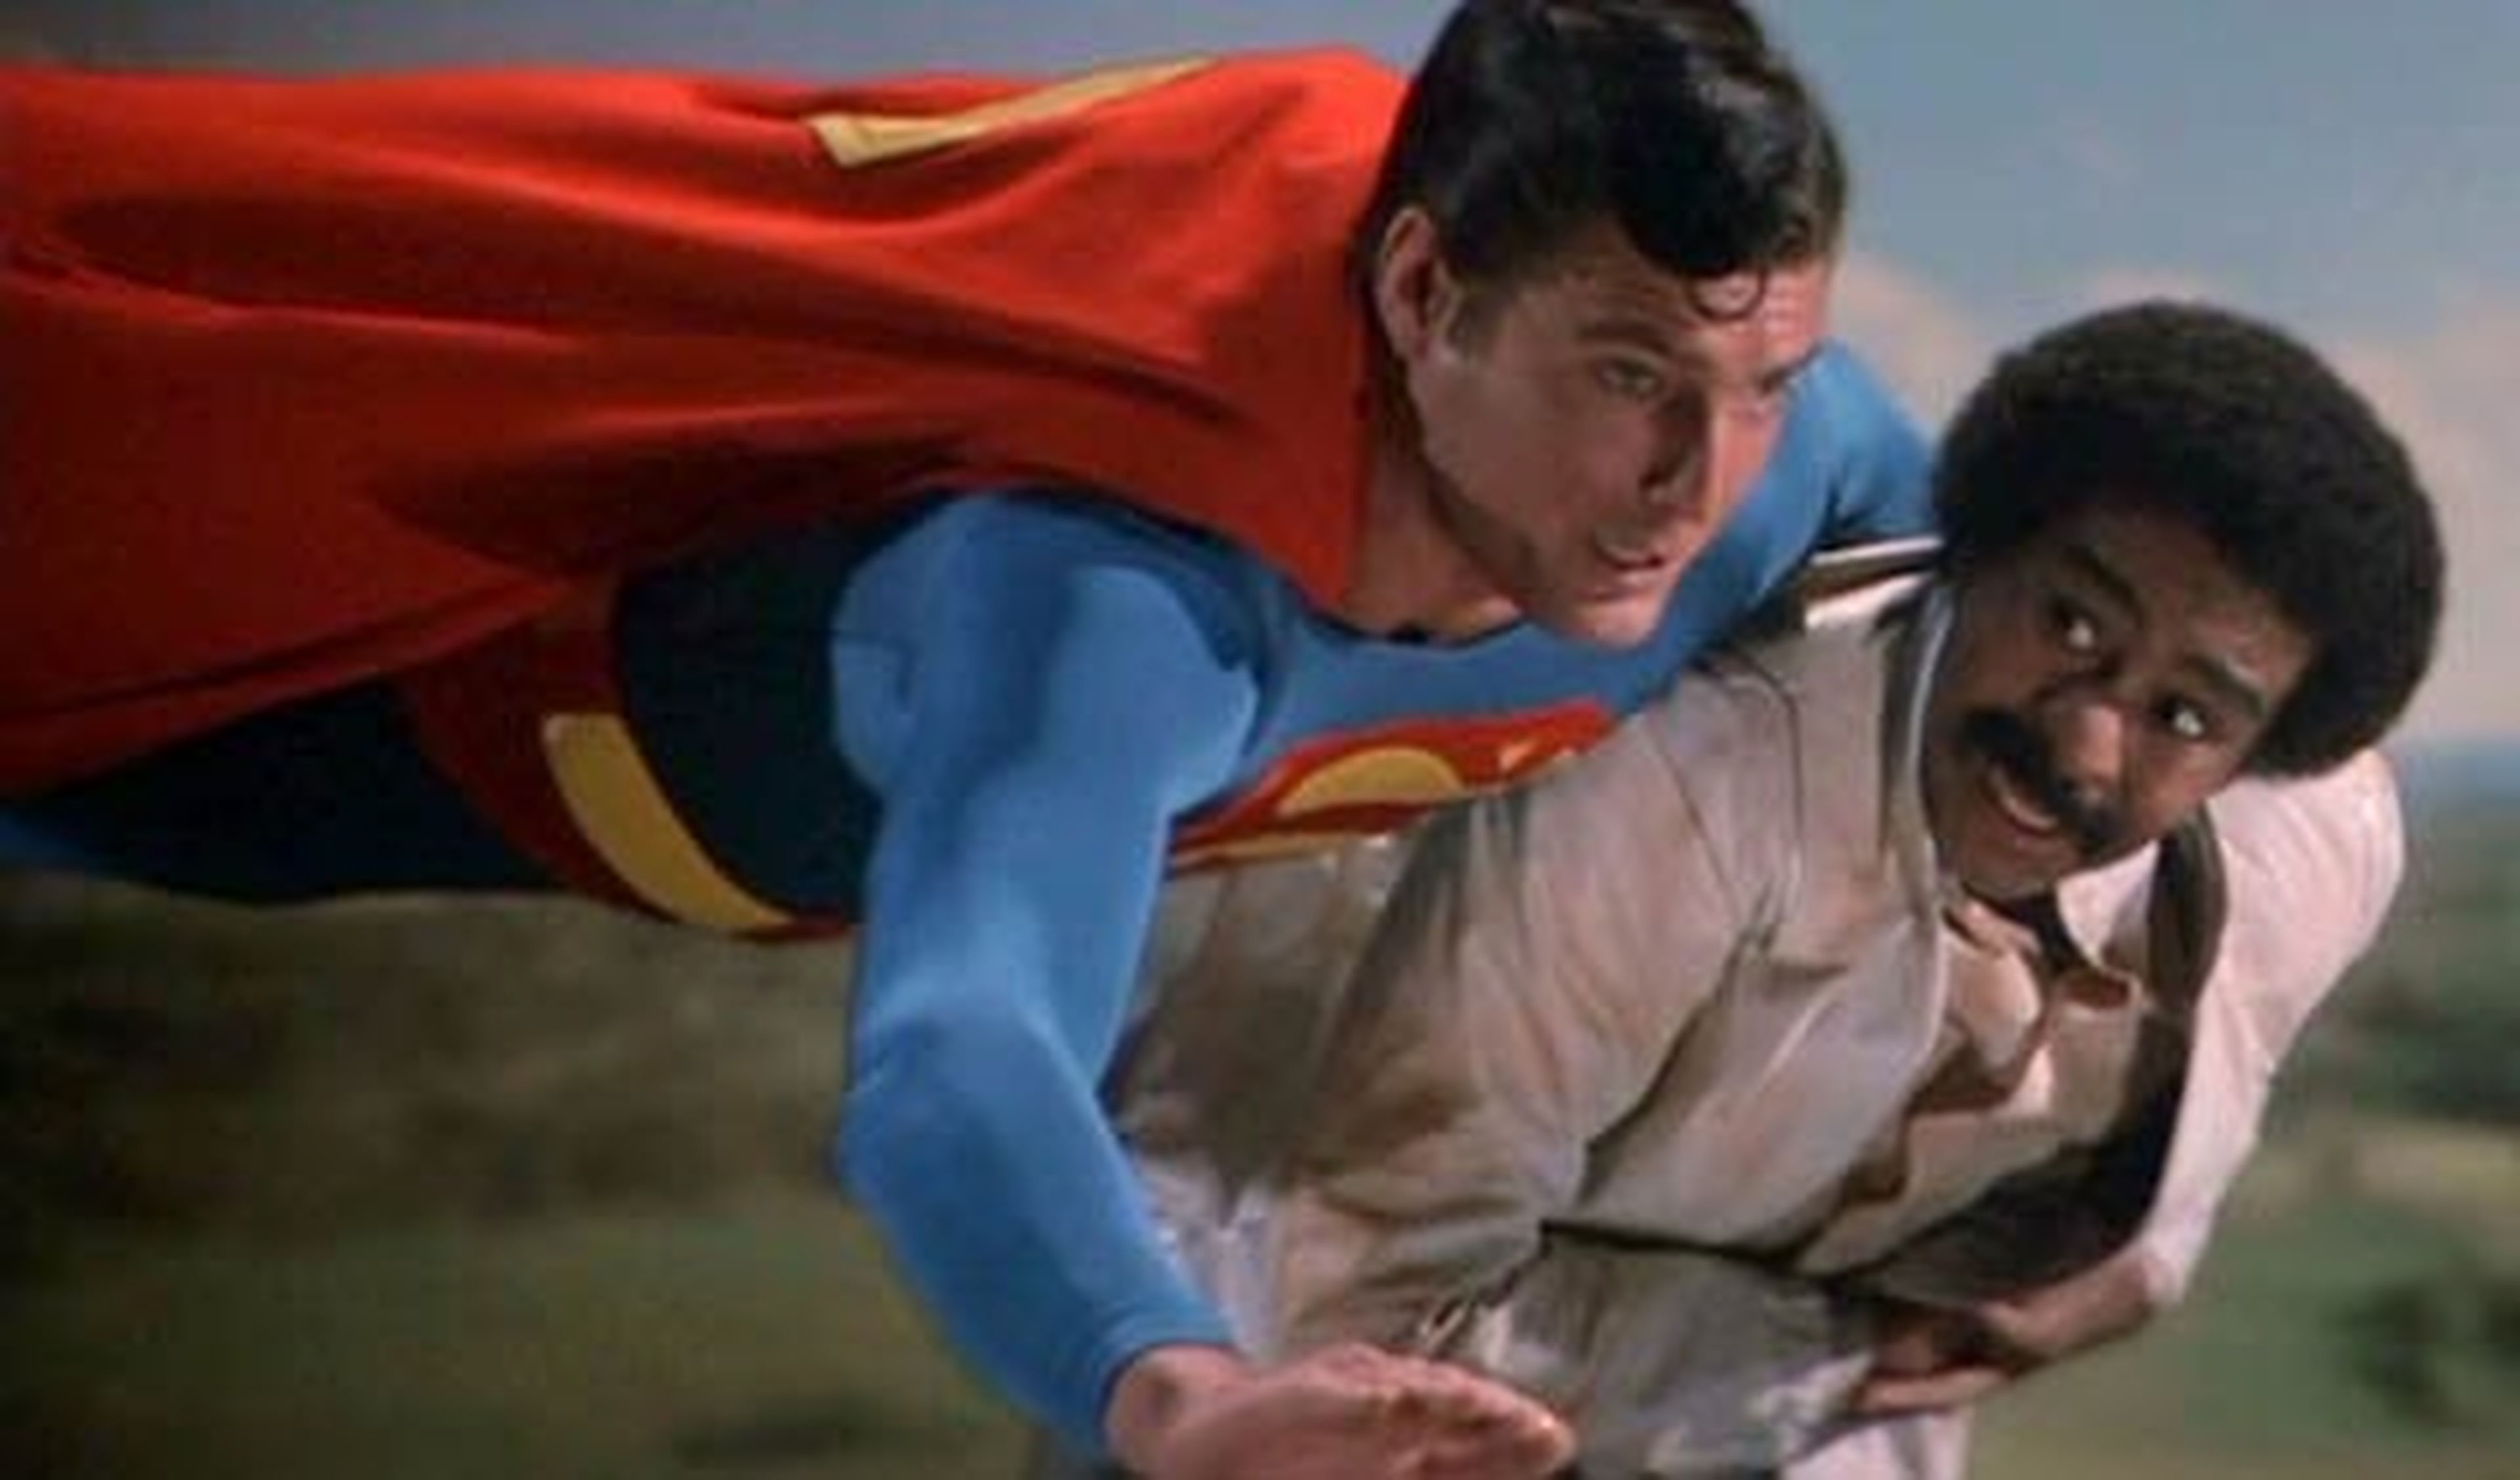 Cine de superhéroes: Crítica de Superman III